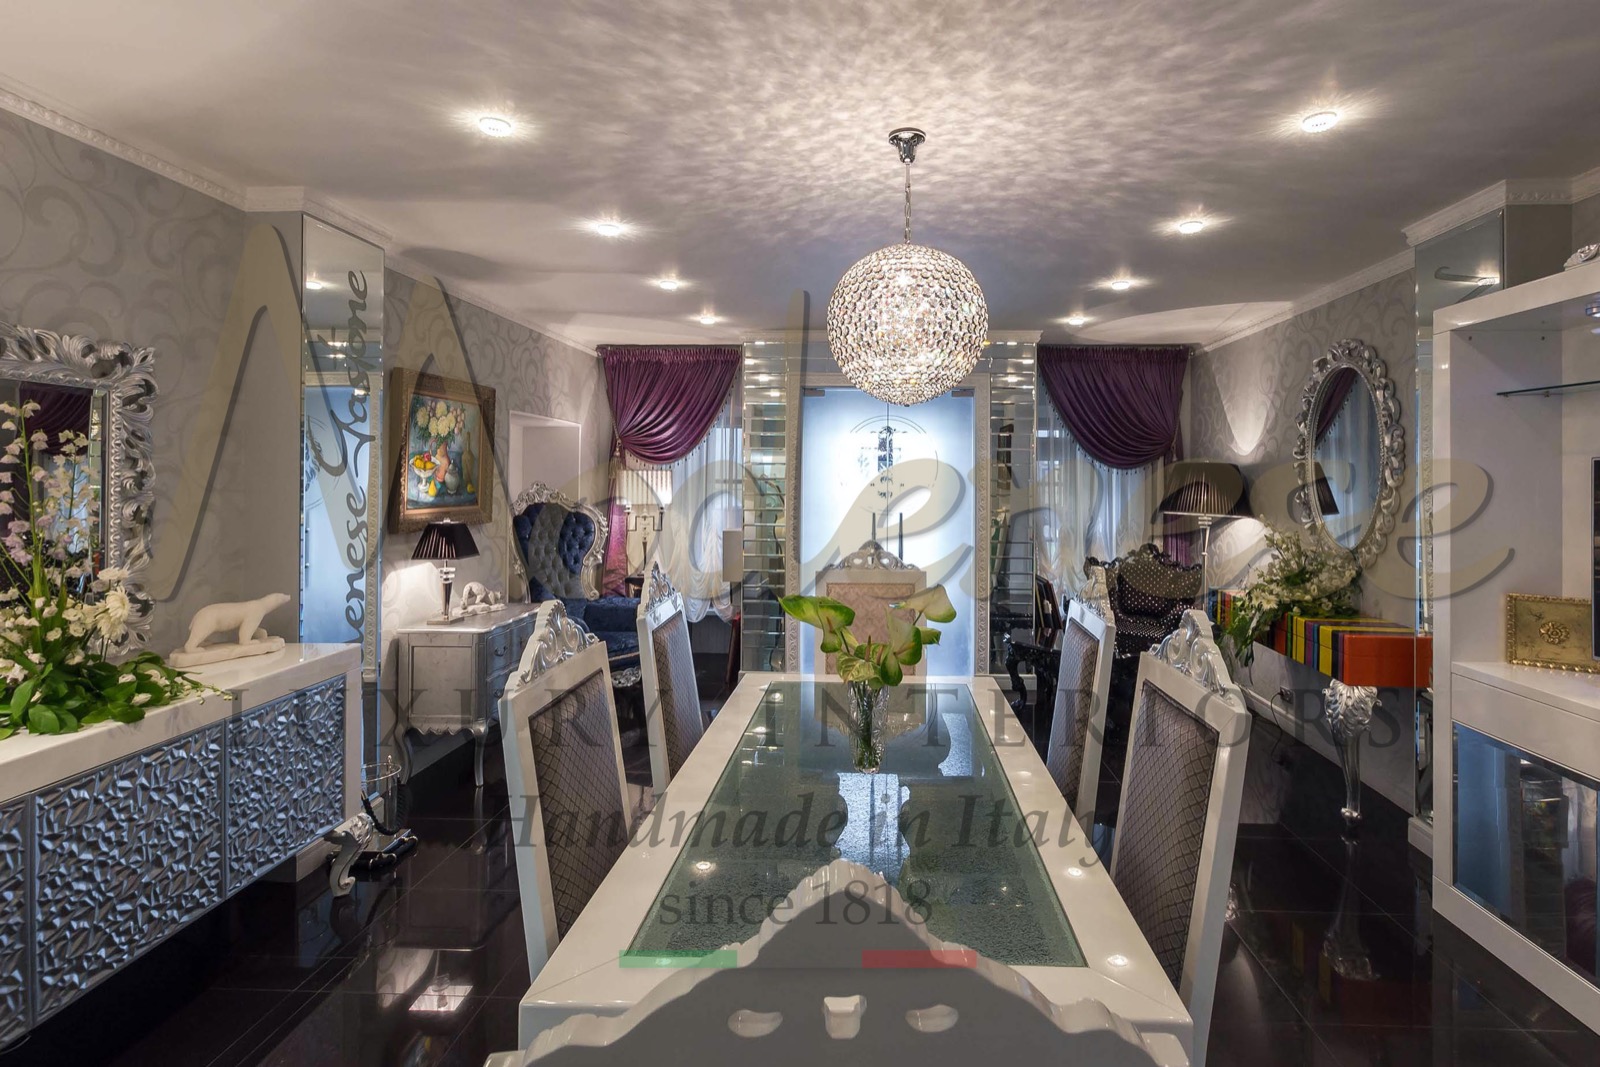 Россия Москва салон роскошной классической мебели made in Italy индивидуальные решения ампир французский стиль итальянский